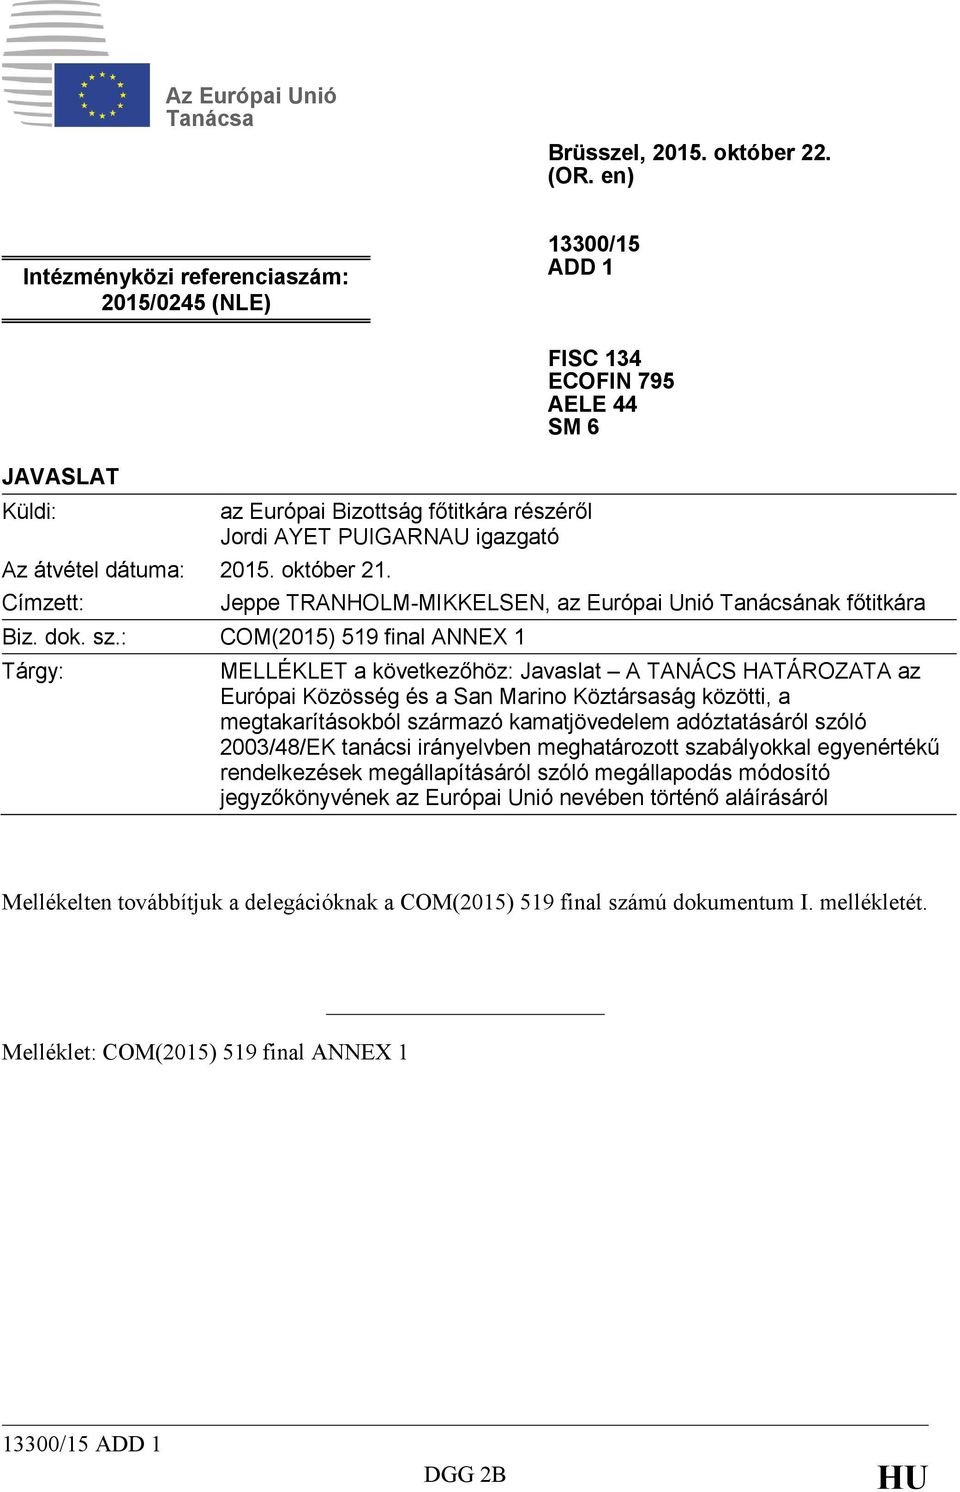 : COM(2015) 519 final ANNEX 1 Tárgy: MELLÉKLET a következőhöz: Javaslat A TANÁCS HATÁROZATA az Európai Közösség és a San Marino Köztársaság közötti, a megtakarításokból származó kamatjövedelem